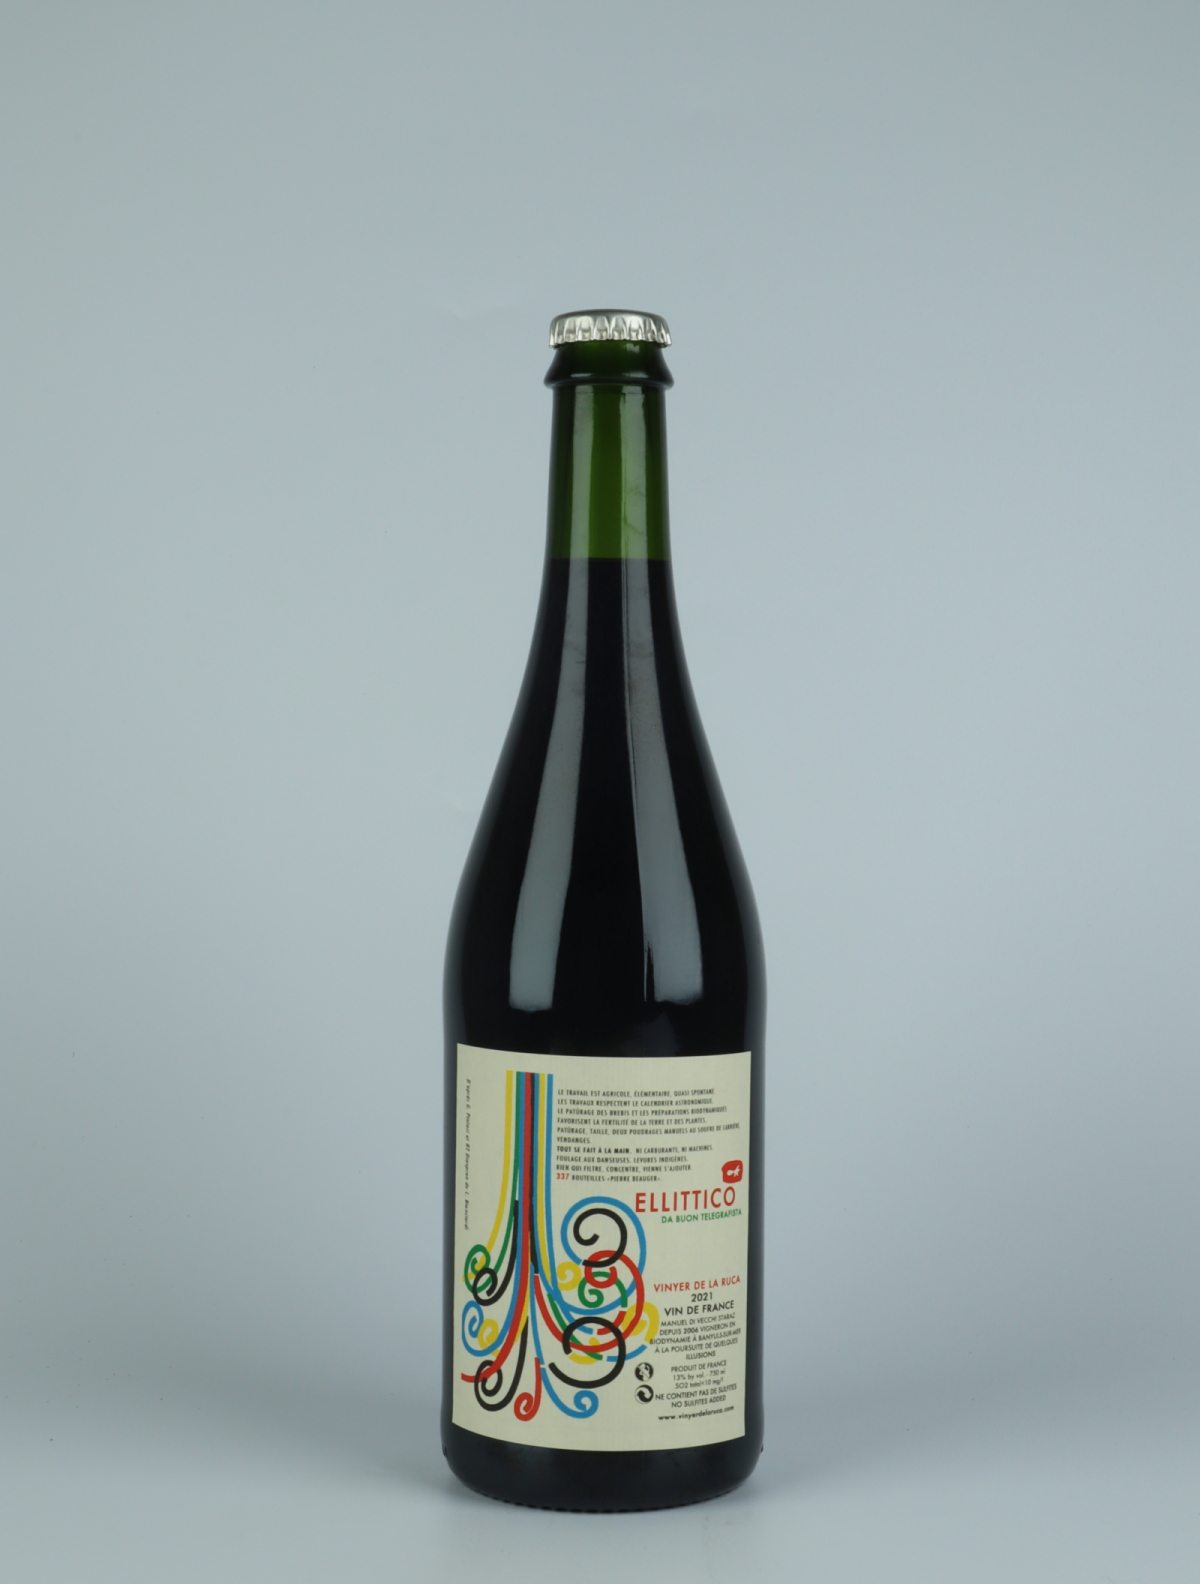 A bottle 2021 Ellittico Red wine from Vinyer de la Ruca, Rousillon in France